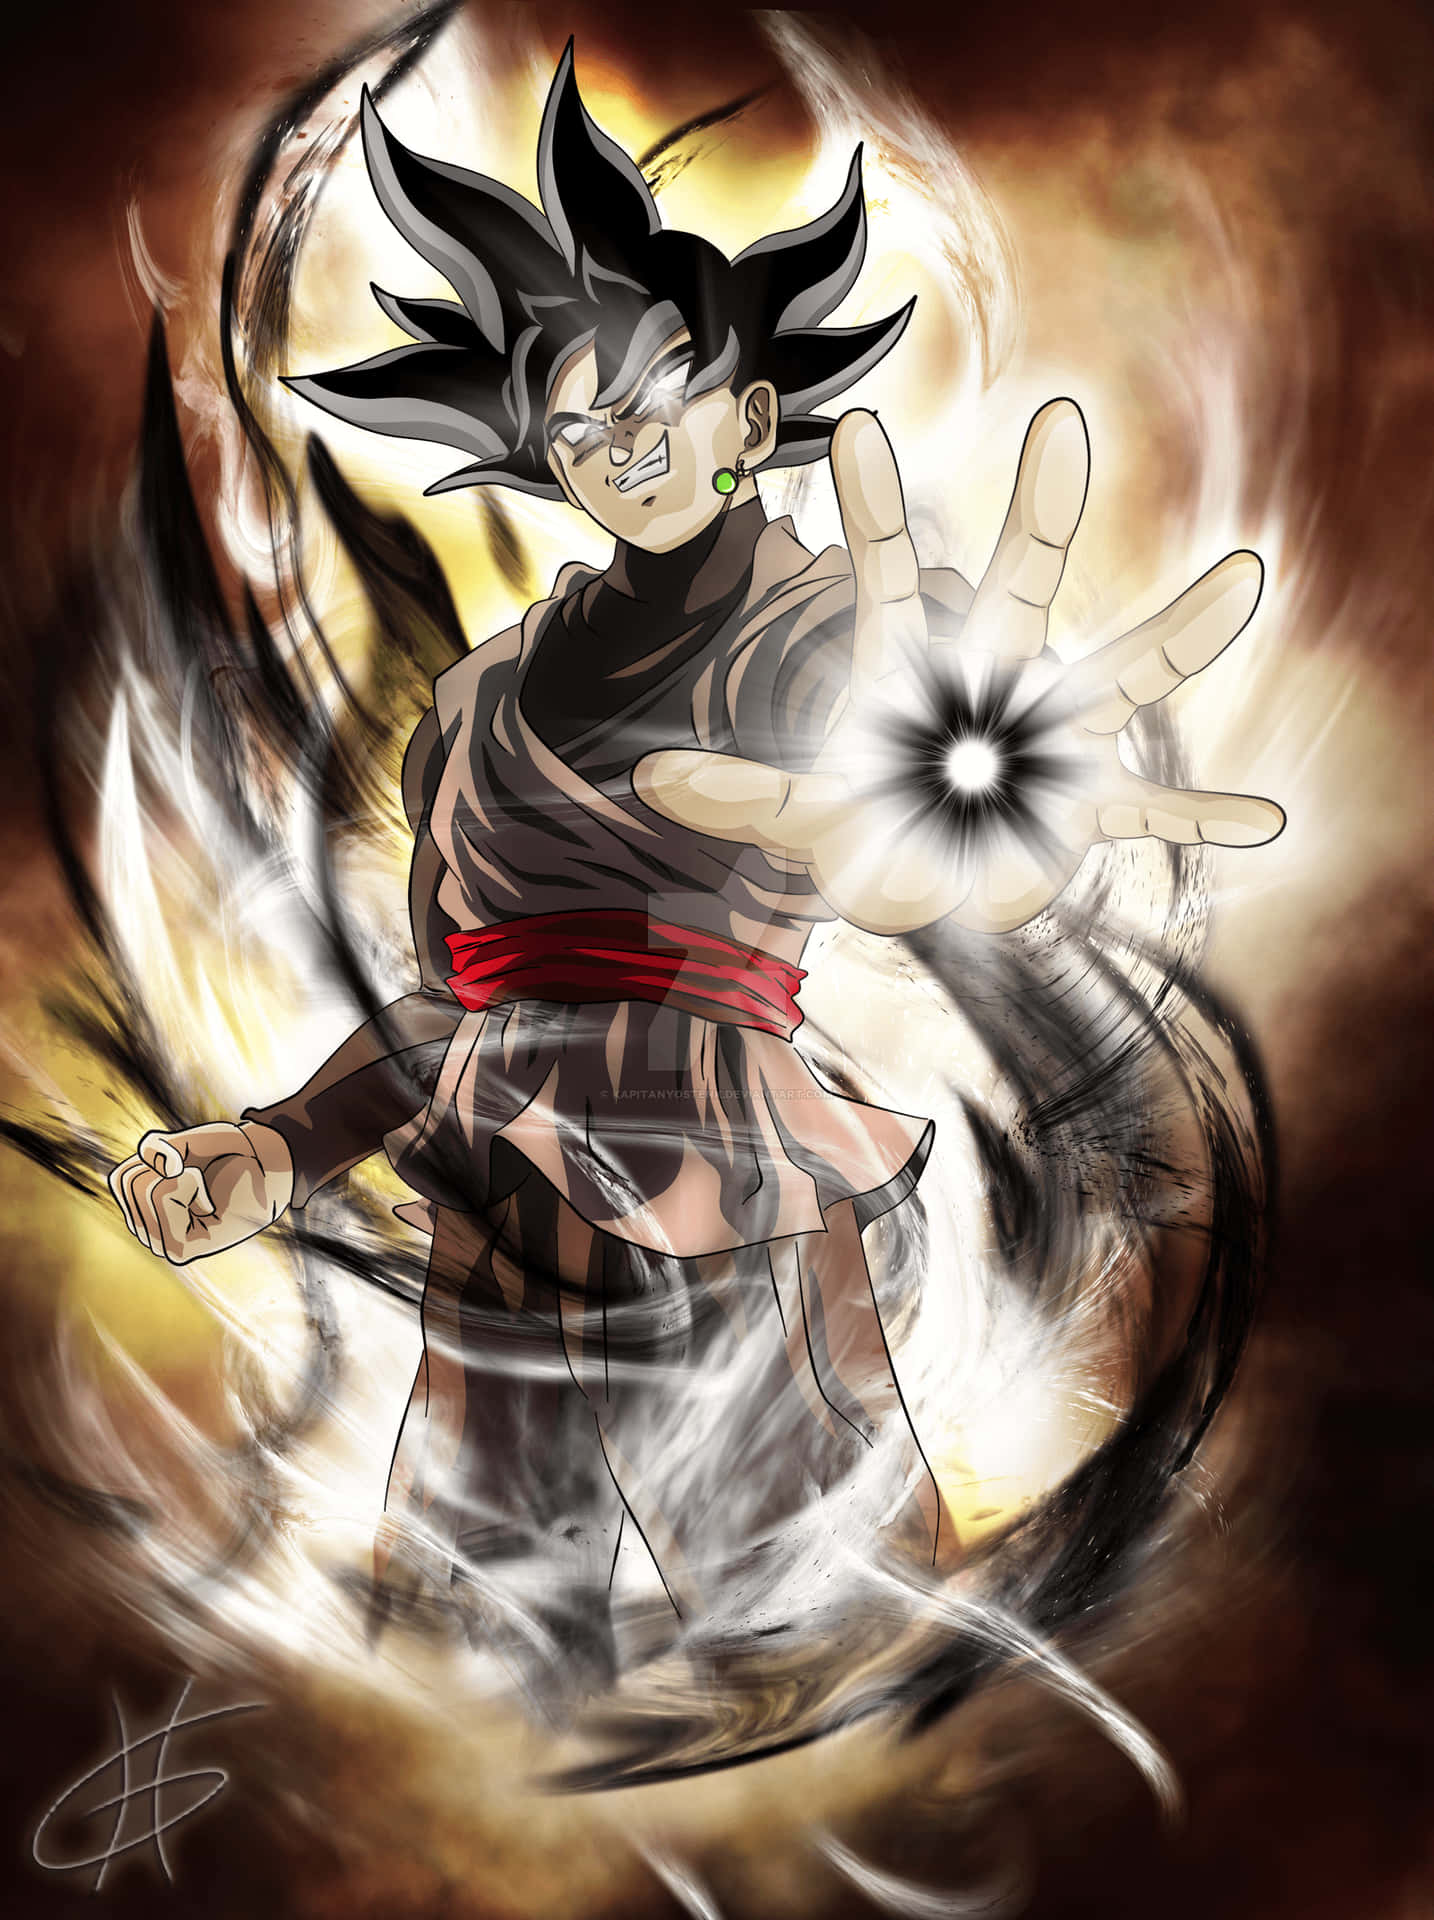 Superpower Of Black Goku